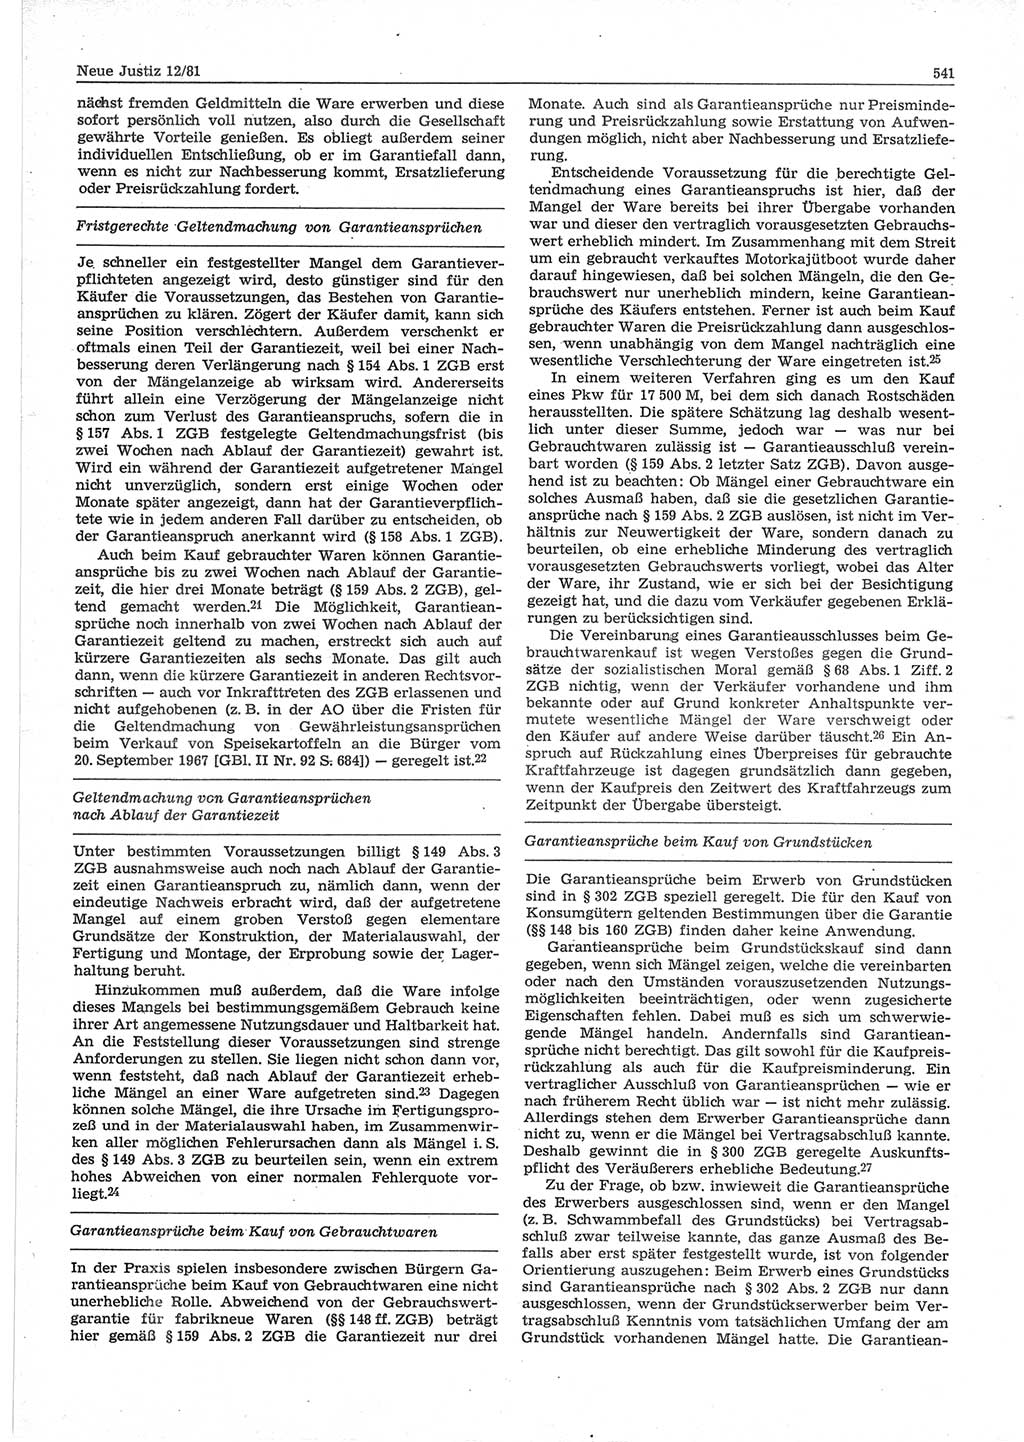 Neue Justiz (NJ), Zeitschrift für sozialistisches Recht und Gesetzlichkeit [Deutsche Demokratische Republik (DDR)], 35. Jahrgang 1981, Seite 541 (NJ DDR 1981, S. 541)